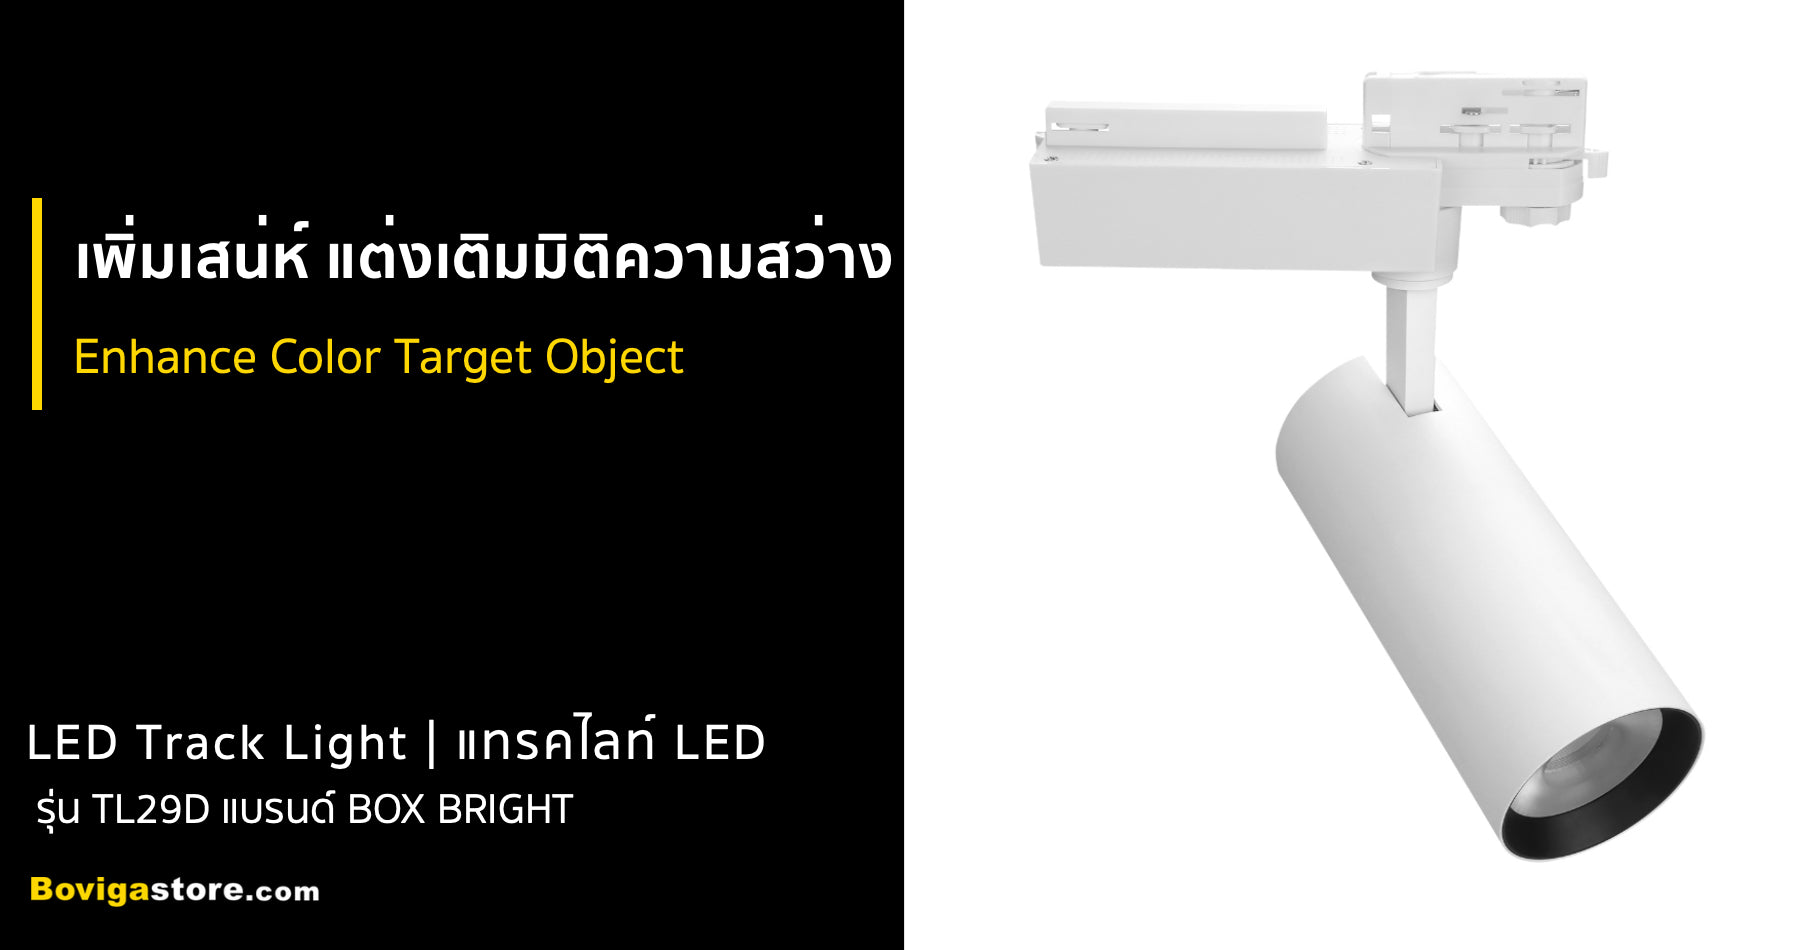 โคมไฟ แทรคไลท์ LED รุ่นใหม่ TL29D แบรนด์ BOX BRIGHT ดีไซด์สวยงาม อายุการใช้งานยาวนาน 50000 ชั่วโมง